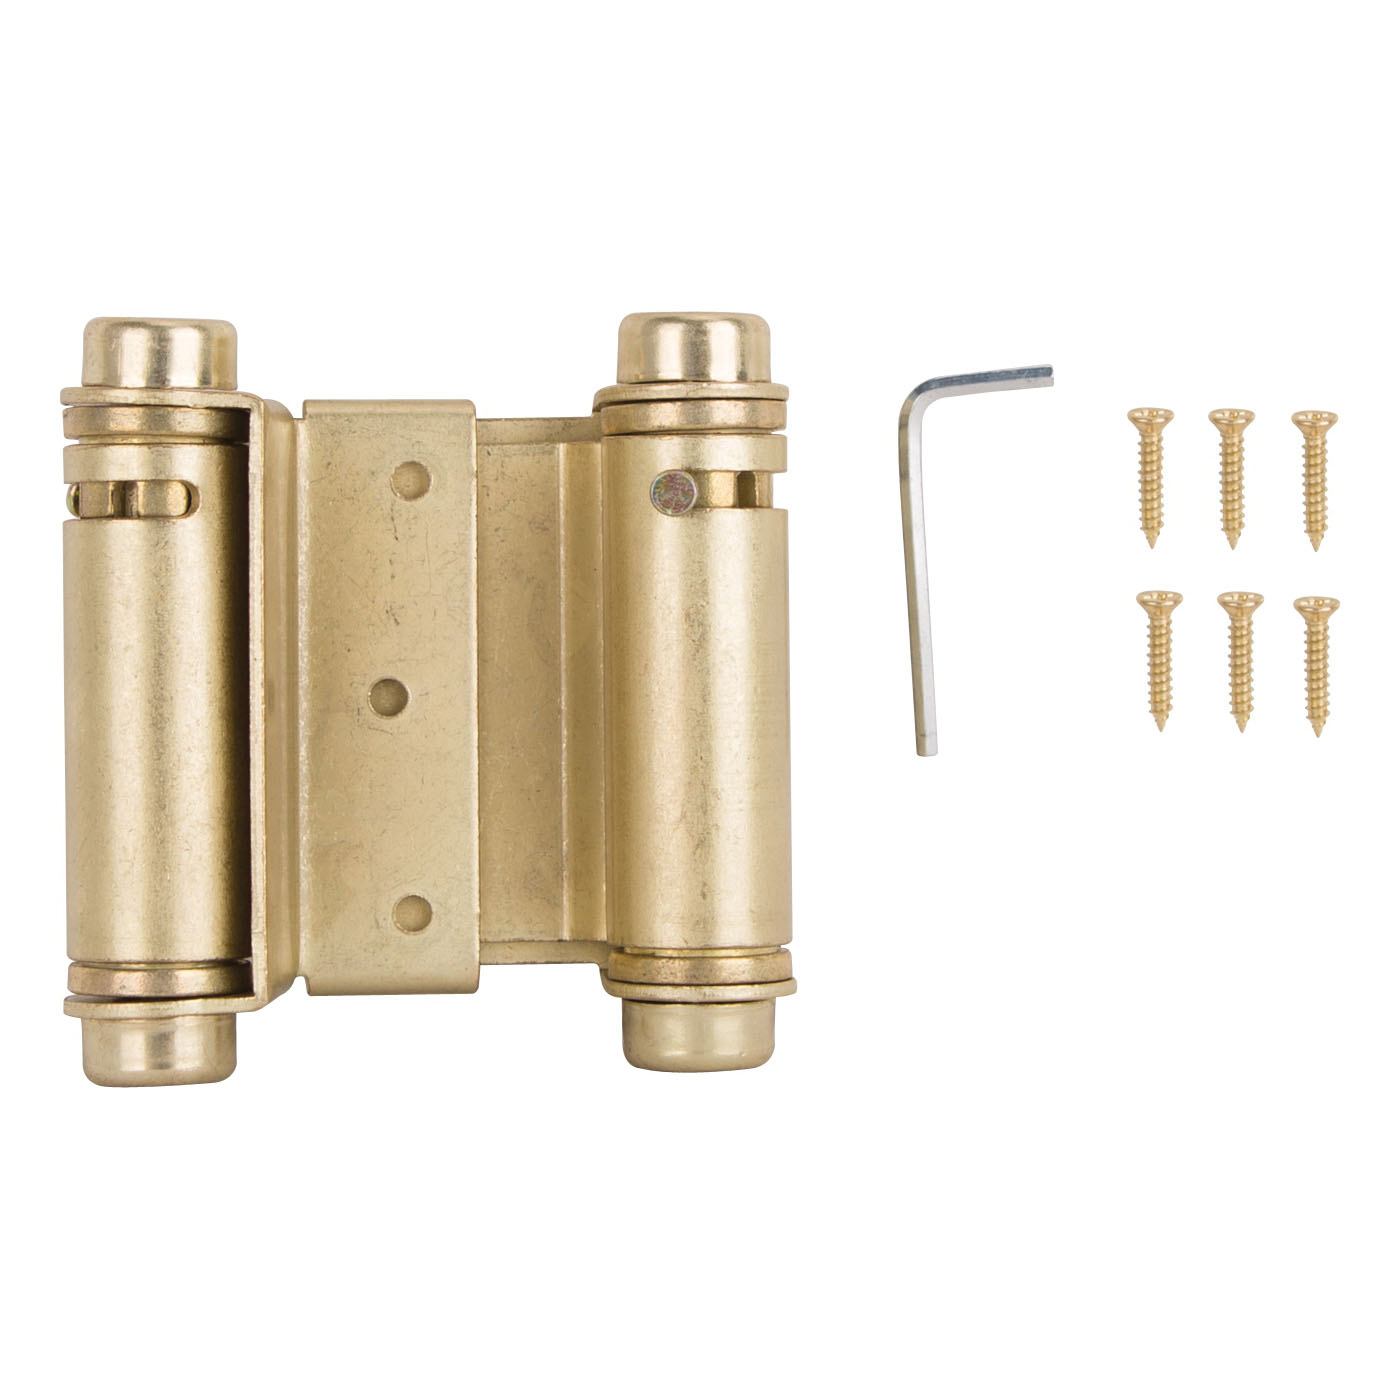 LR-024-LPS Spring Hinge, Steel, Satin Brass, Tension Pin, 180 deg Range of Motion, Screw Mounting, 12 lb